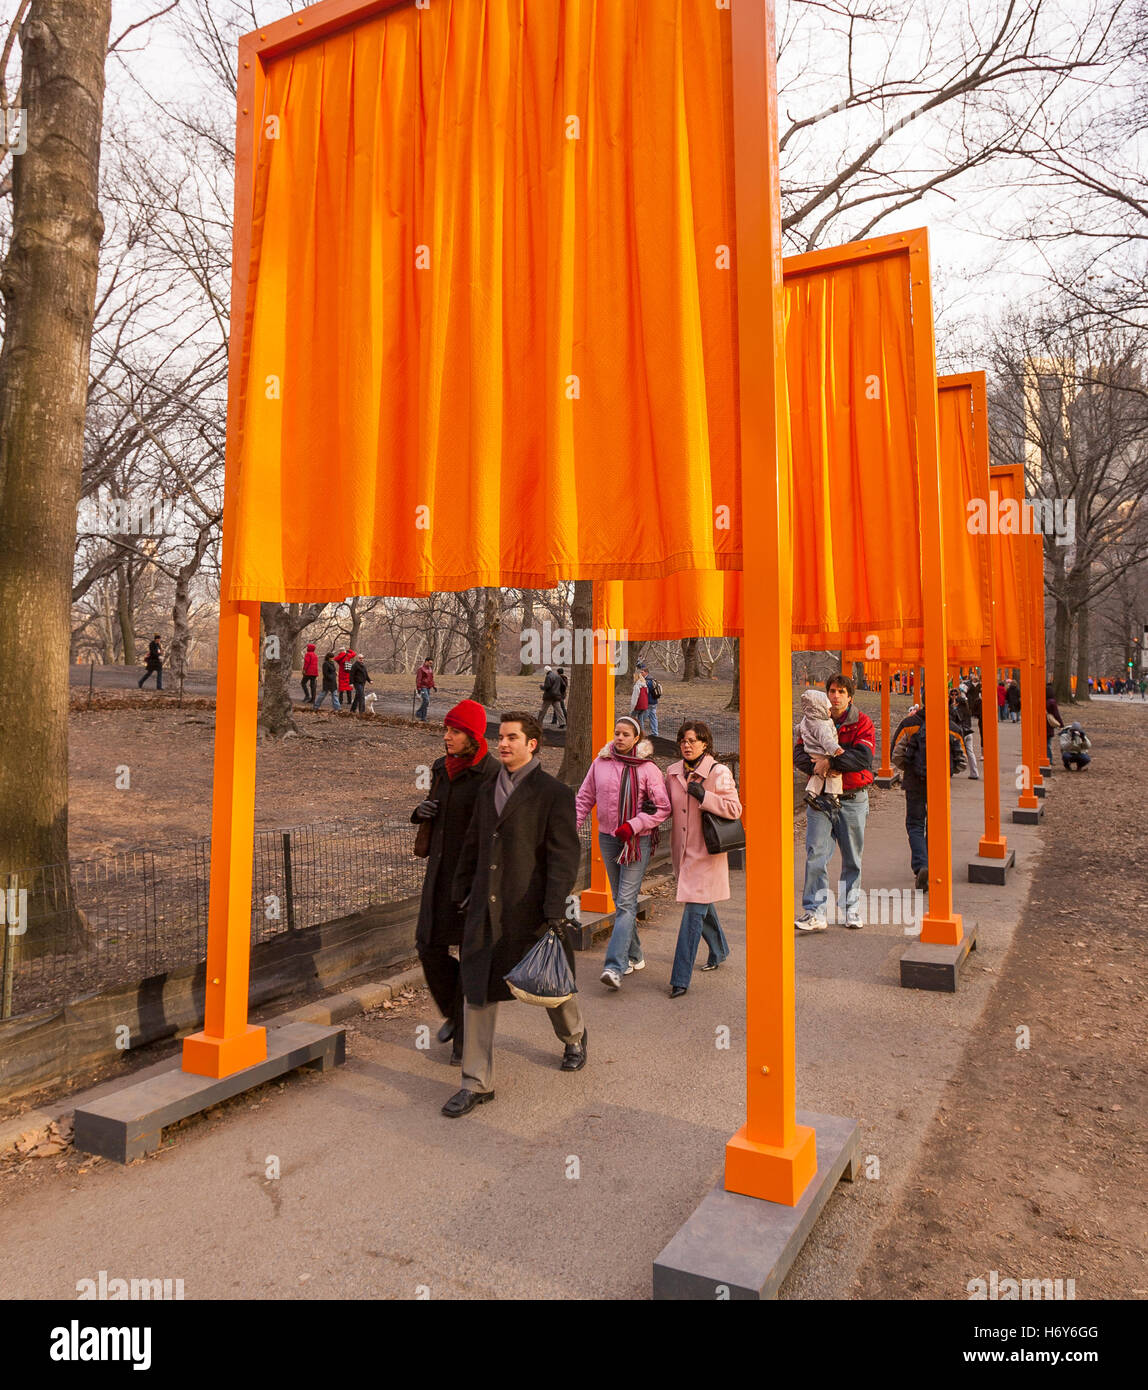 NEW YORK, NEW YORK, Stati Uniti d'America - 'gate' arte pubblica installazione nel parco centrale di artisti Christo e Jean-Claude. Foto Stock